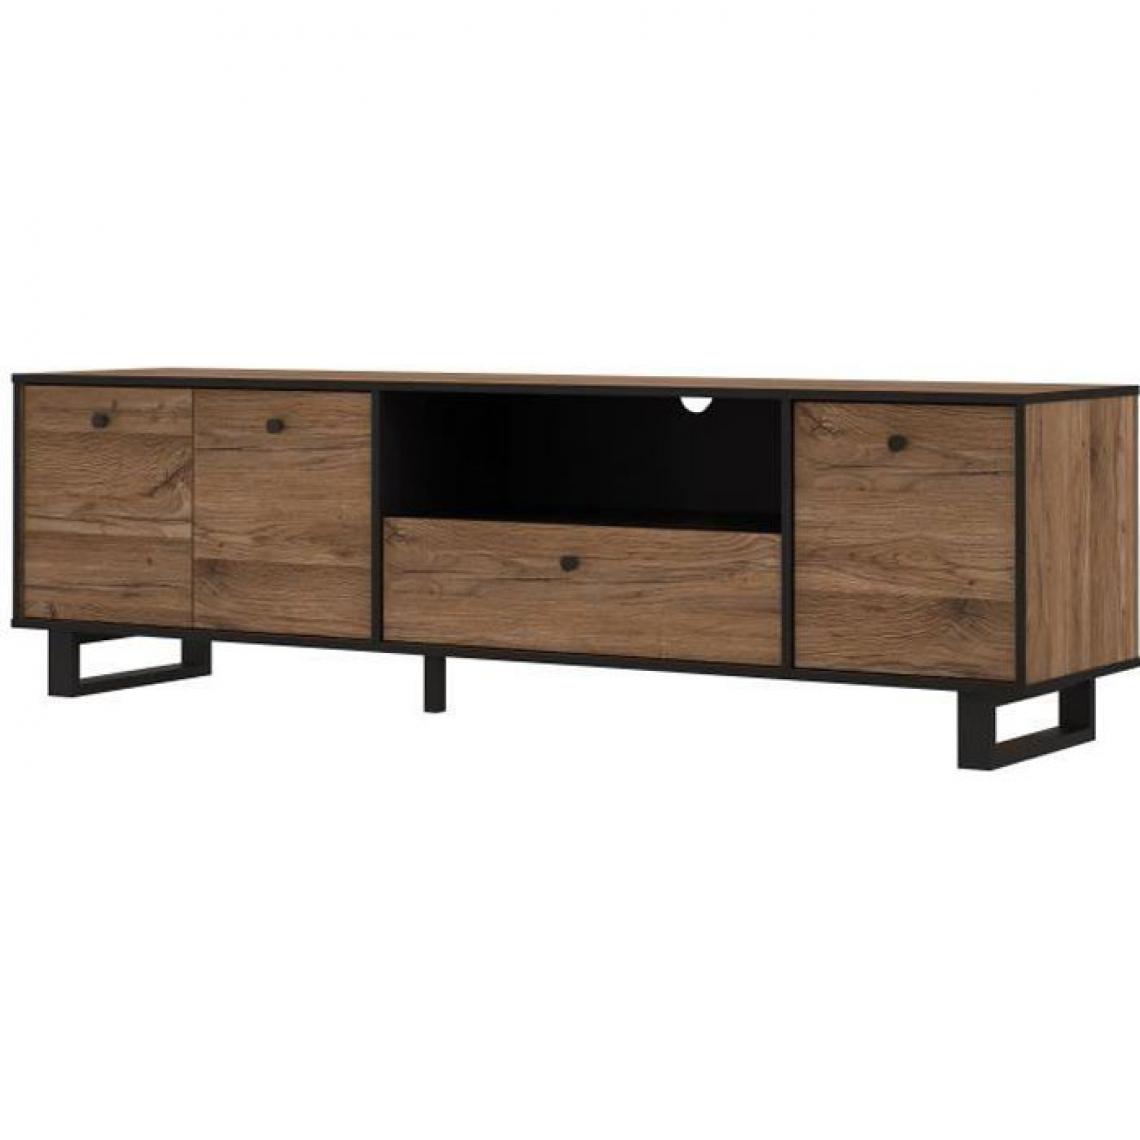 Cstore - CSTORE - meuble tv 3 portes 1 tiroir - décor chêne et noir - l 180, 8xp 42xh 52, 8 cm - sewill - Meubles TV, Hi-Fi